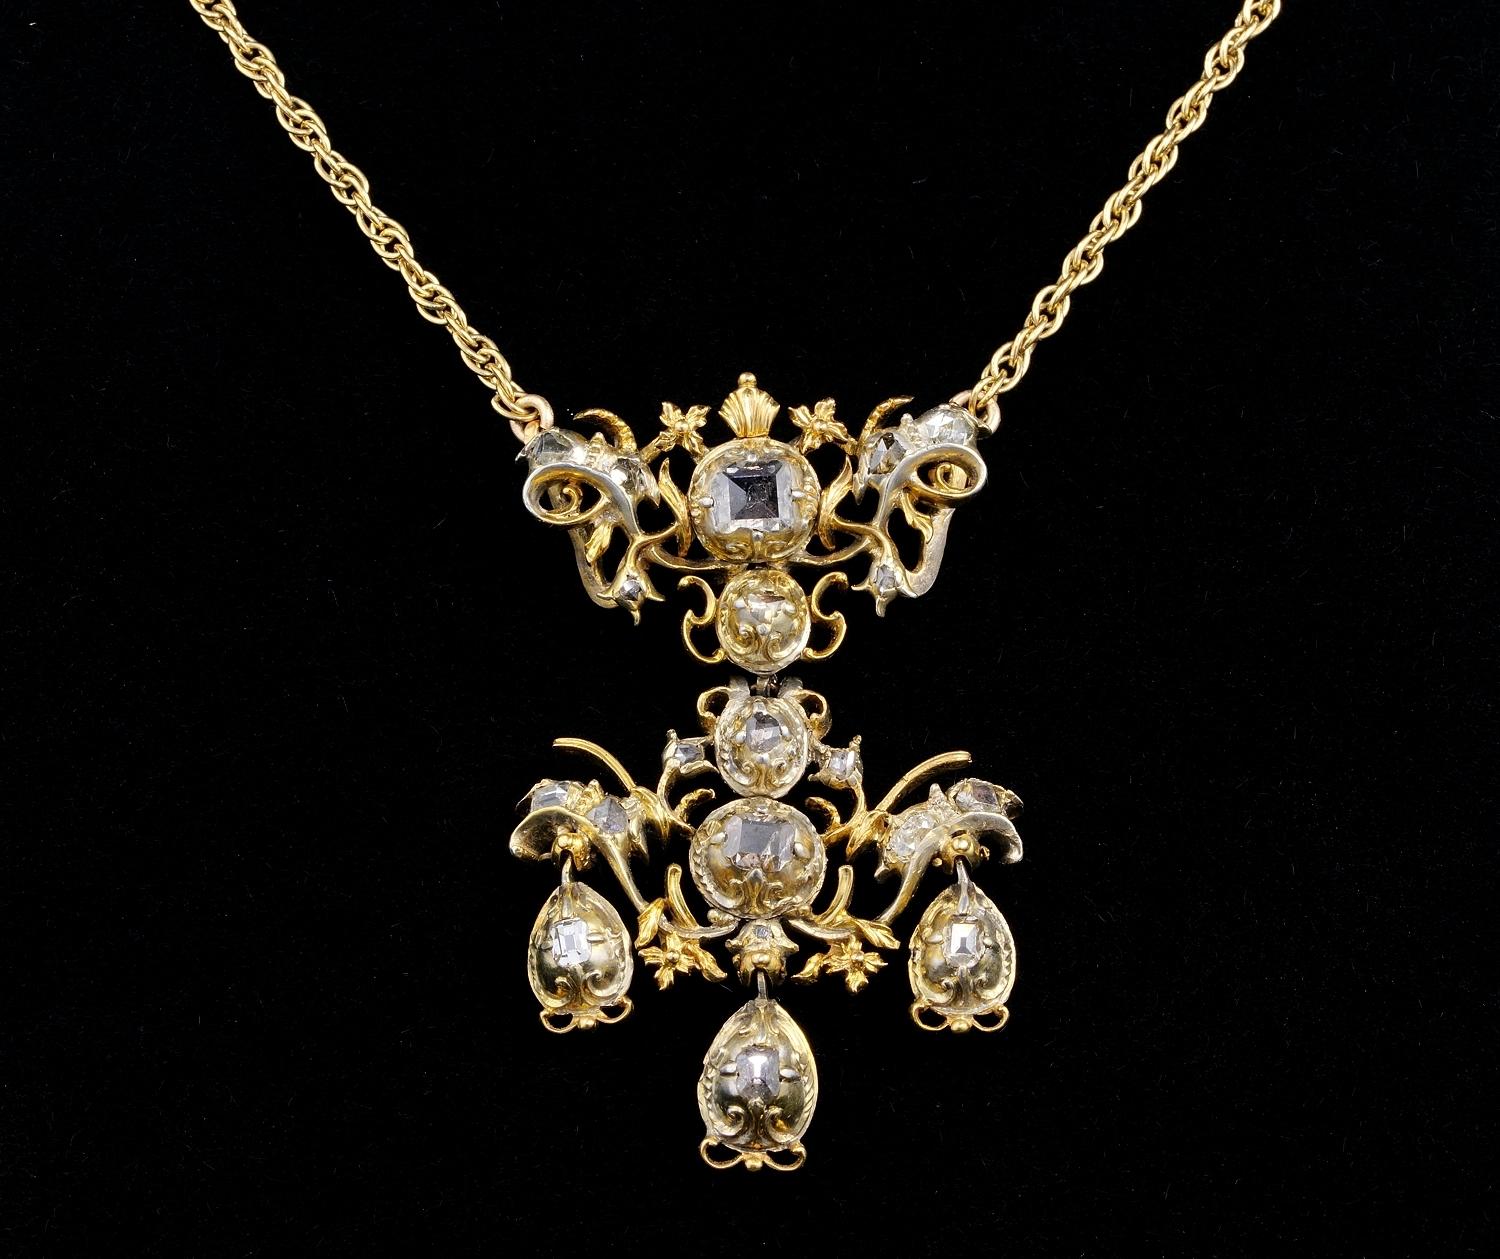 Diese schöne barocke georgianische Periode Anhänger ist Silber reines Gold vergoldet, 1700 ca
Kombiniert mit einem antiken viktorianischen Zeit (später in der Zeit als der Anhänger) 9 KT massivem Gold Kette, die schön auf den Anhänger passt
Anhänger